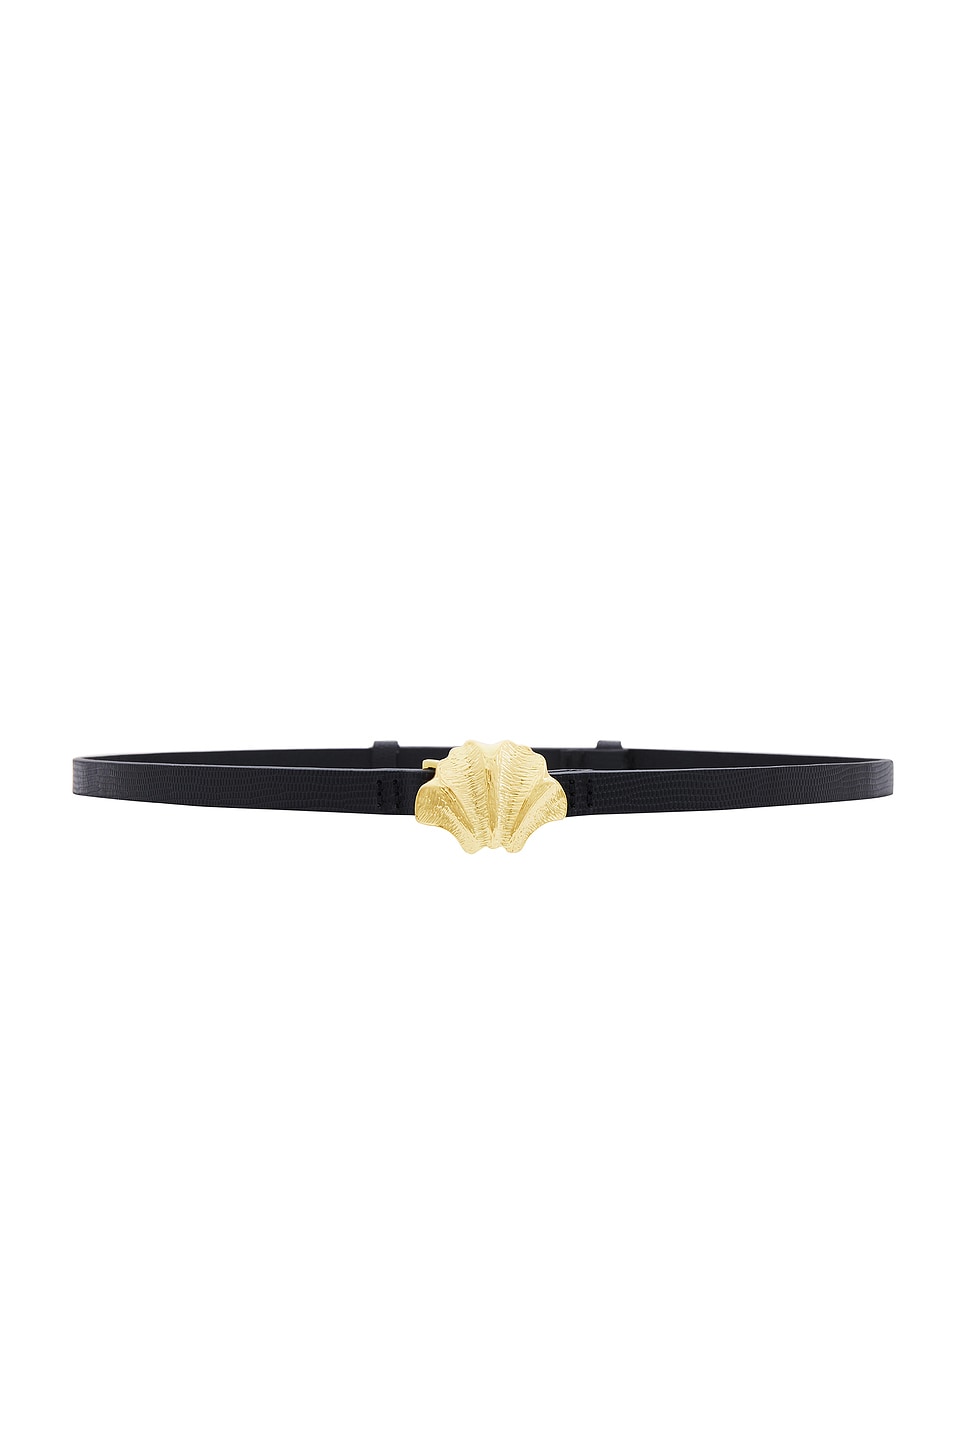 Gingko Leaf Belt in Black